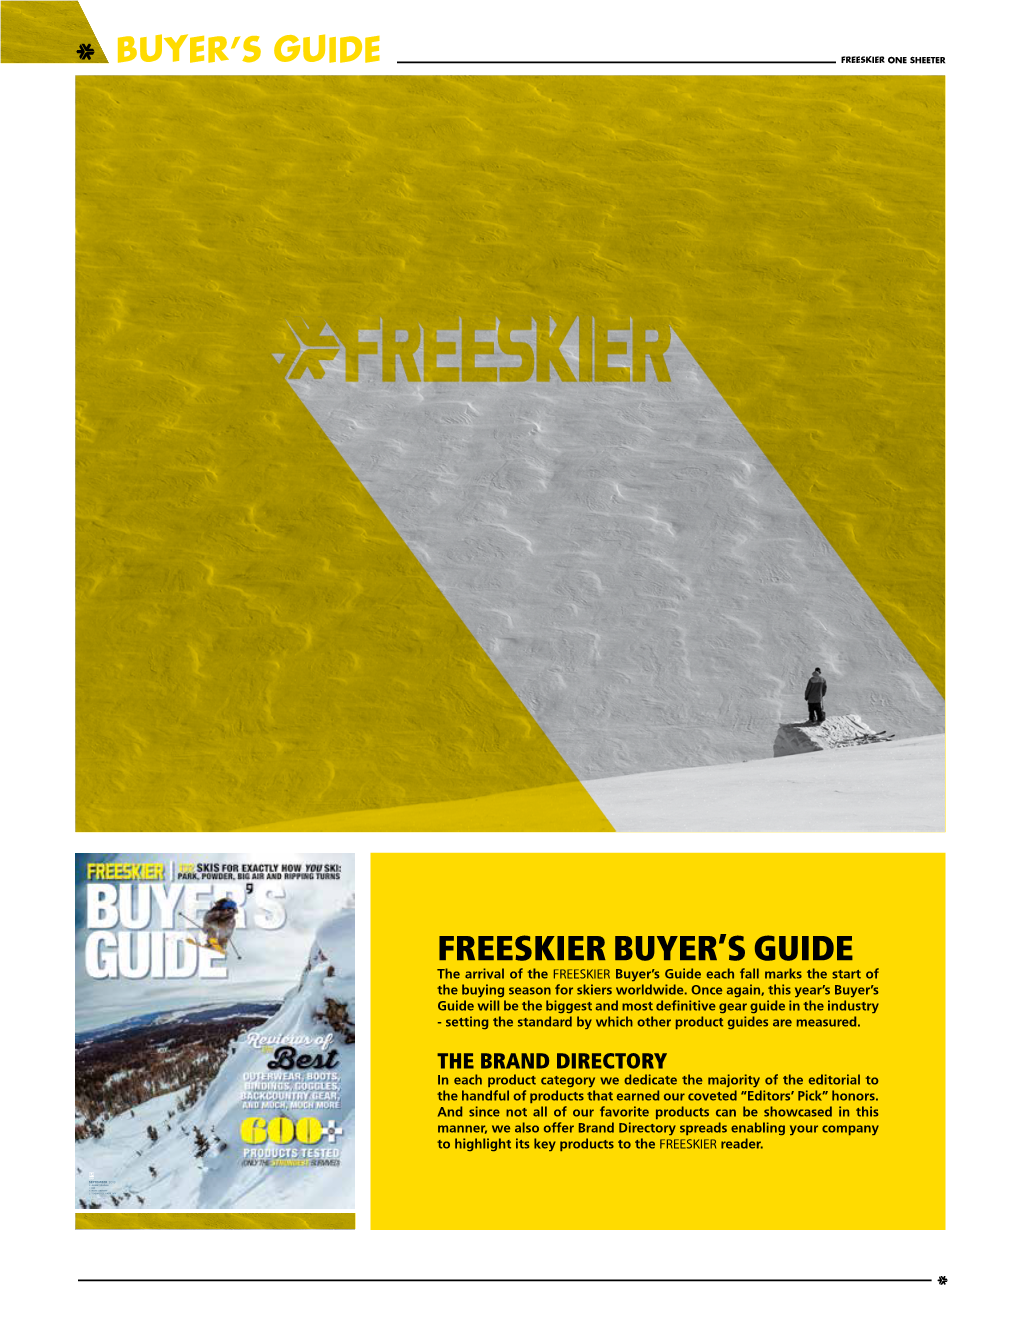 Freeskier Buyer's Guide